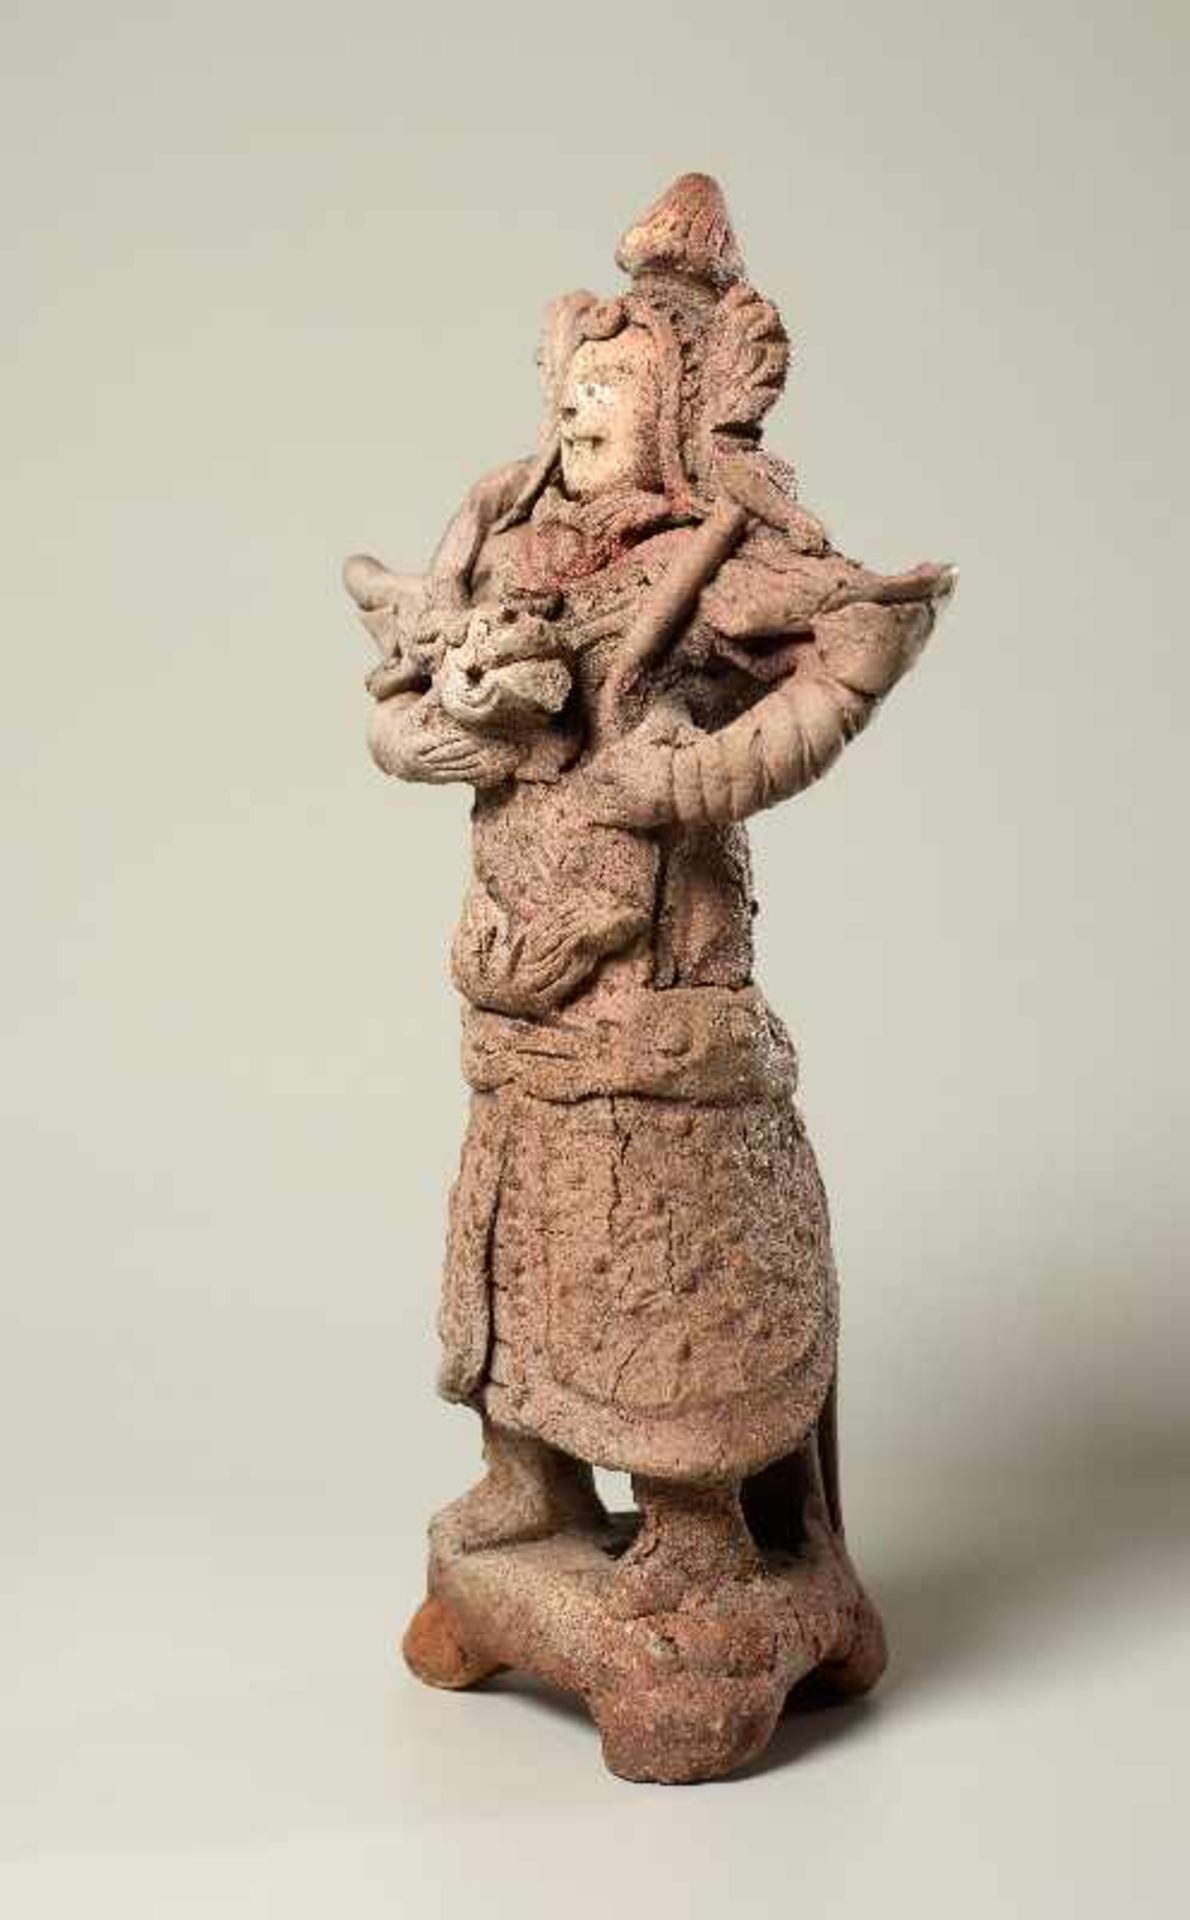 TRUTZIGER GRABWÄCHTER MIT SCHLANGE Terrakotta. China, Yuan-Dynastie (ca. 14. Jh.) Witzig geformt, - Bild 4 aus 6